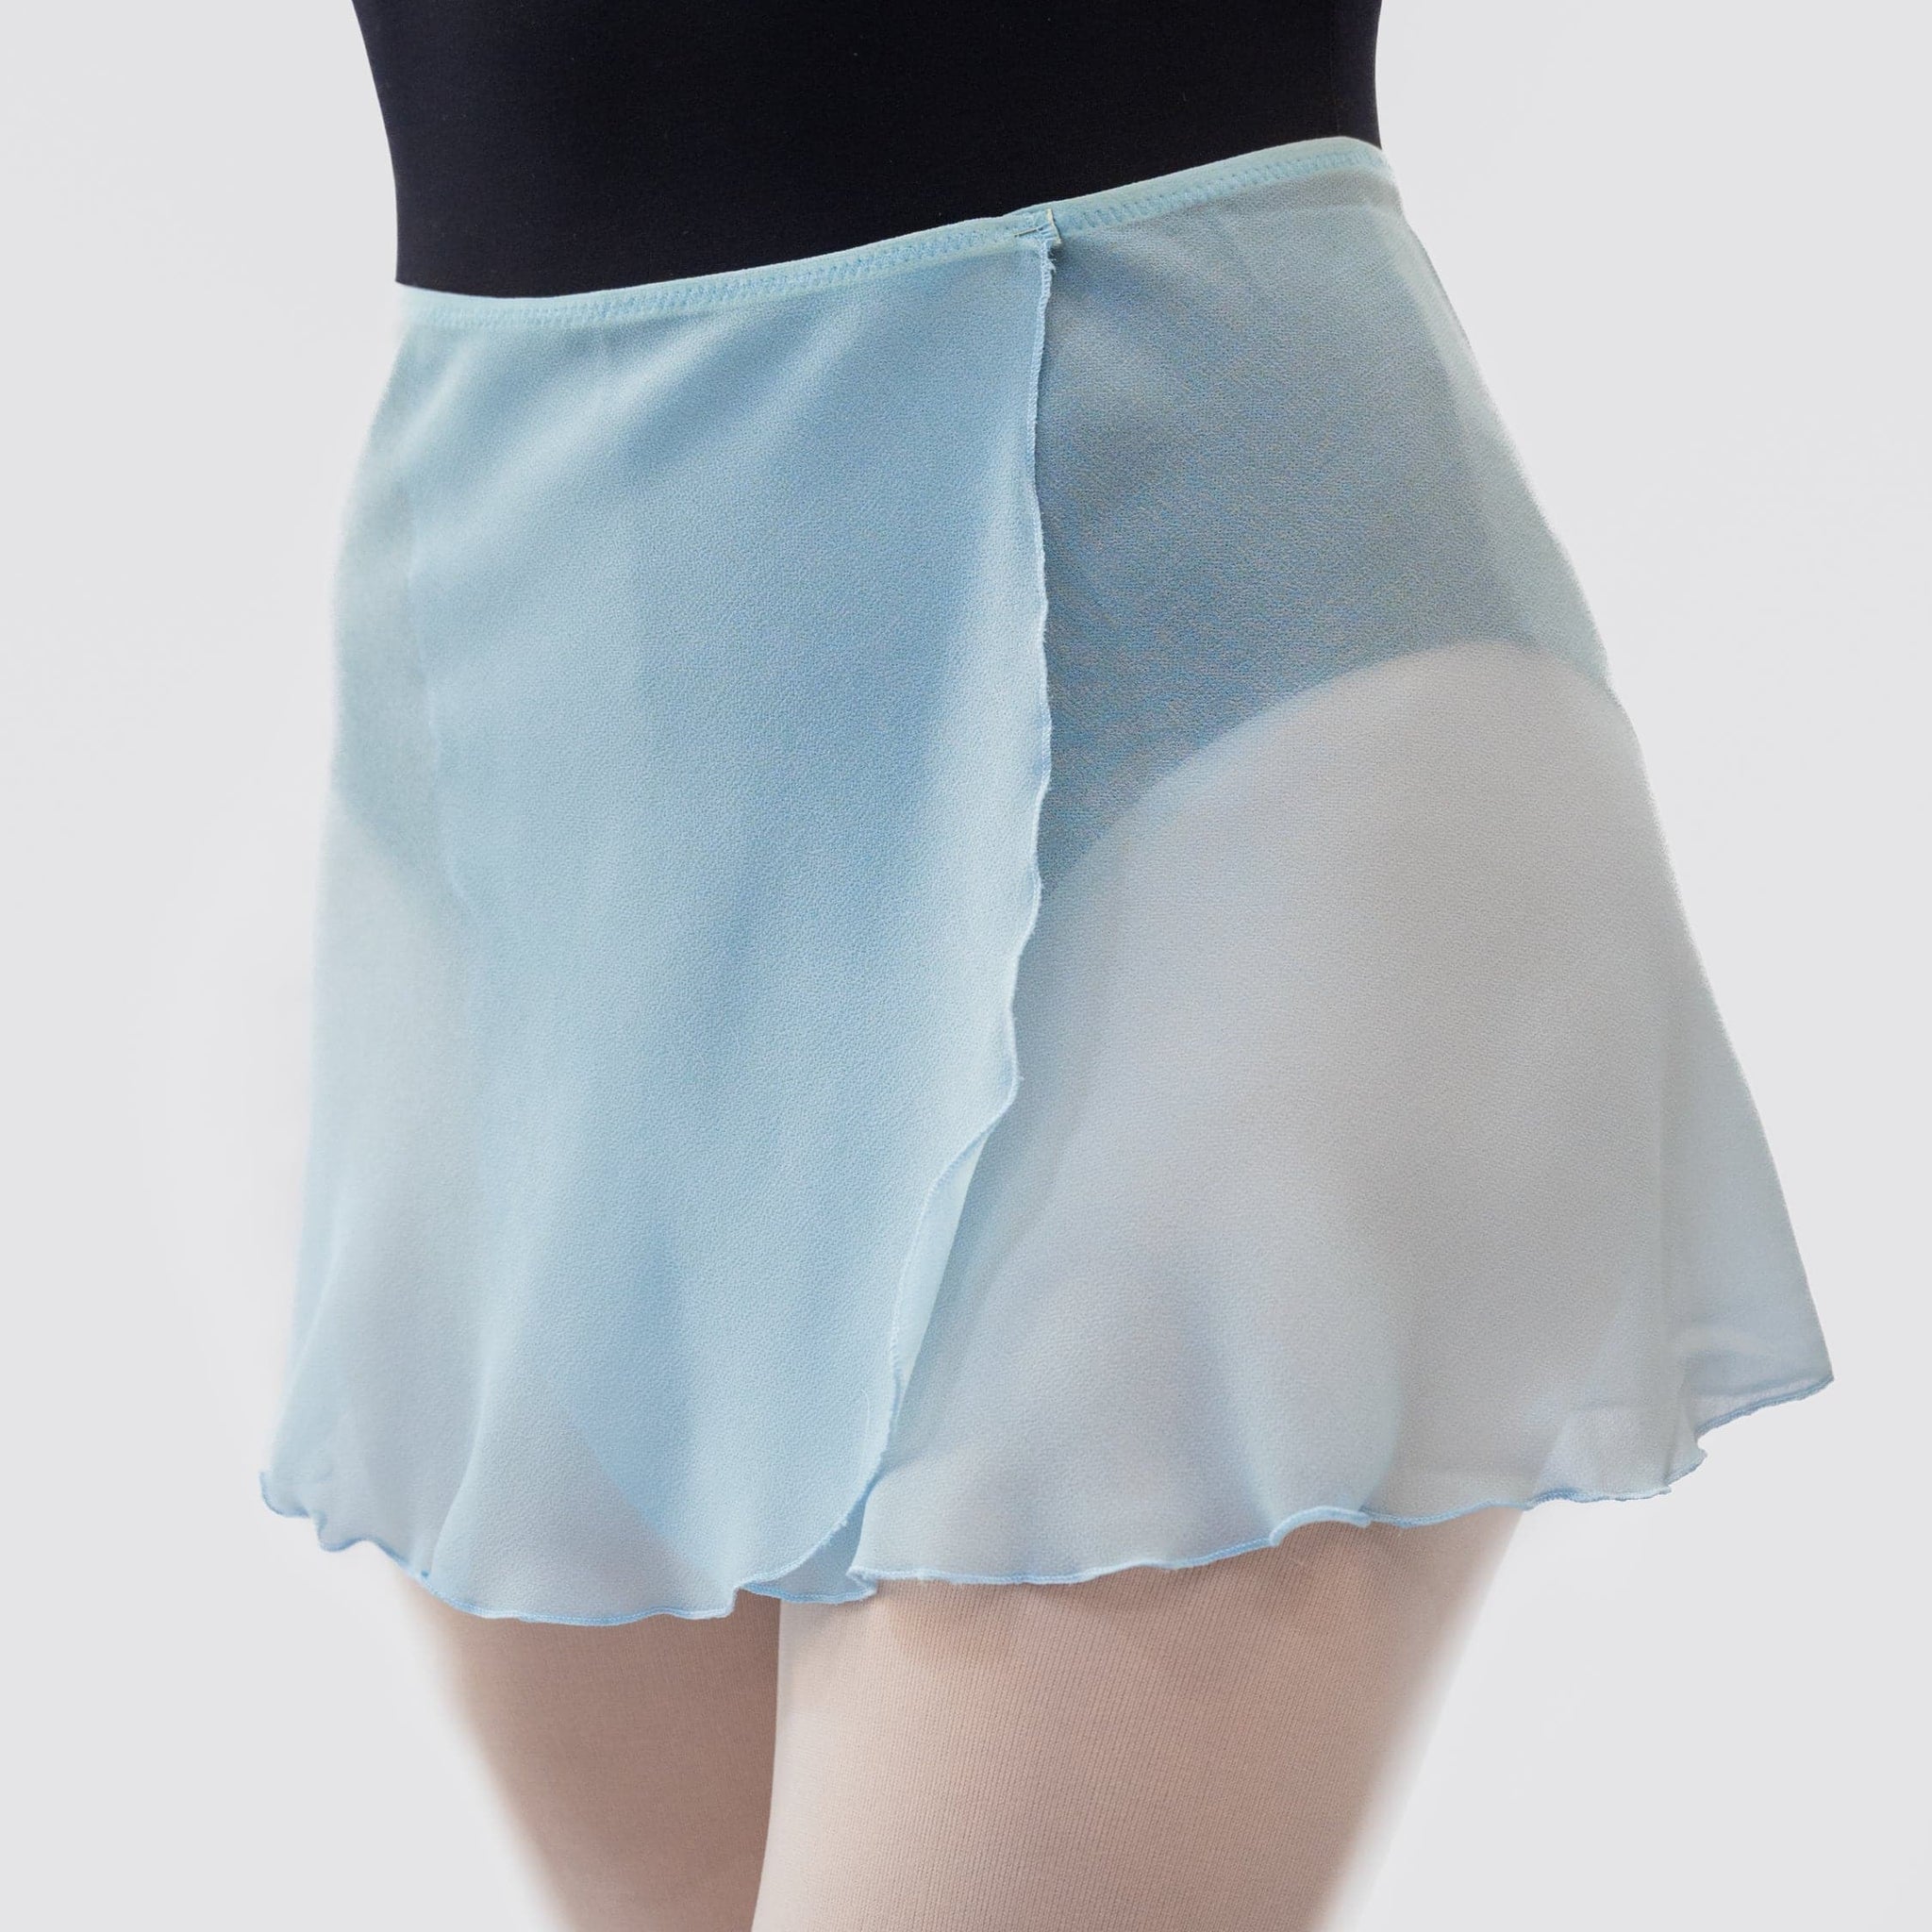 Light Blue Wrap Short Dance Skirt MP301 - Atelier della Danza MP